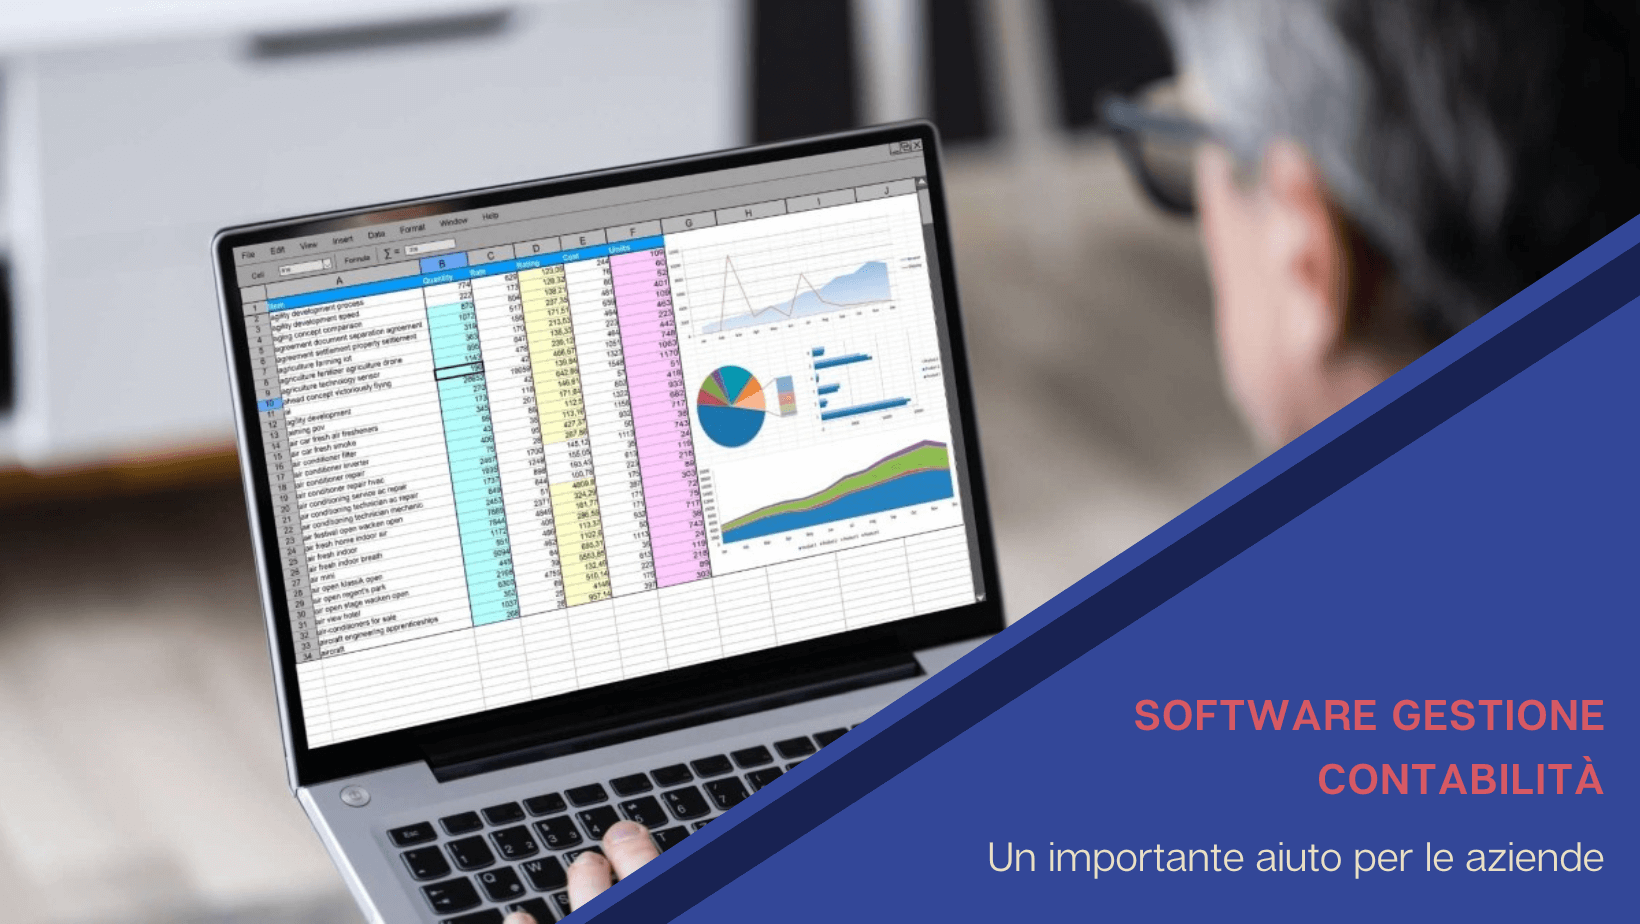 Software gestionale contabilità: un importante aiuto per le aziende